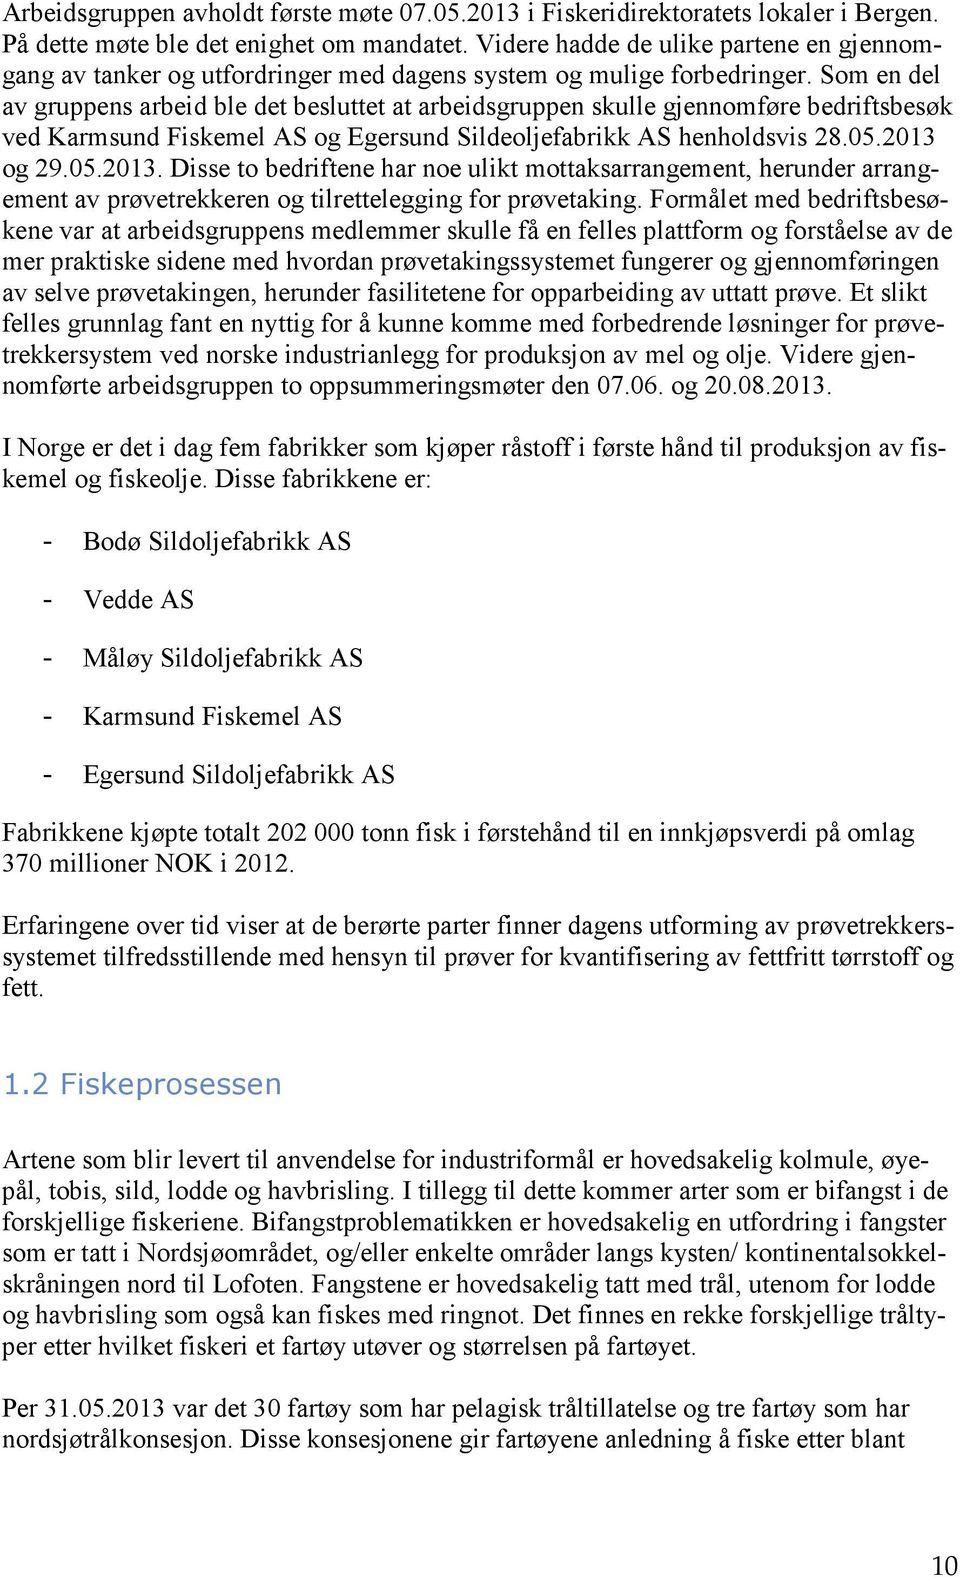 Som en del av gruppens arbeid ble det besluttet at arbeidsgruppen skulle gjennomføre bedriftsbesøk ved Karmsund Fiskemel AS og Egersund Sildeoljefabrikk AS henholdsvis 28.05.2013 